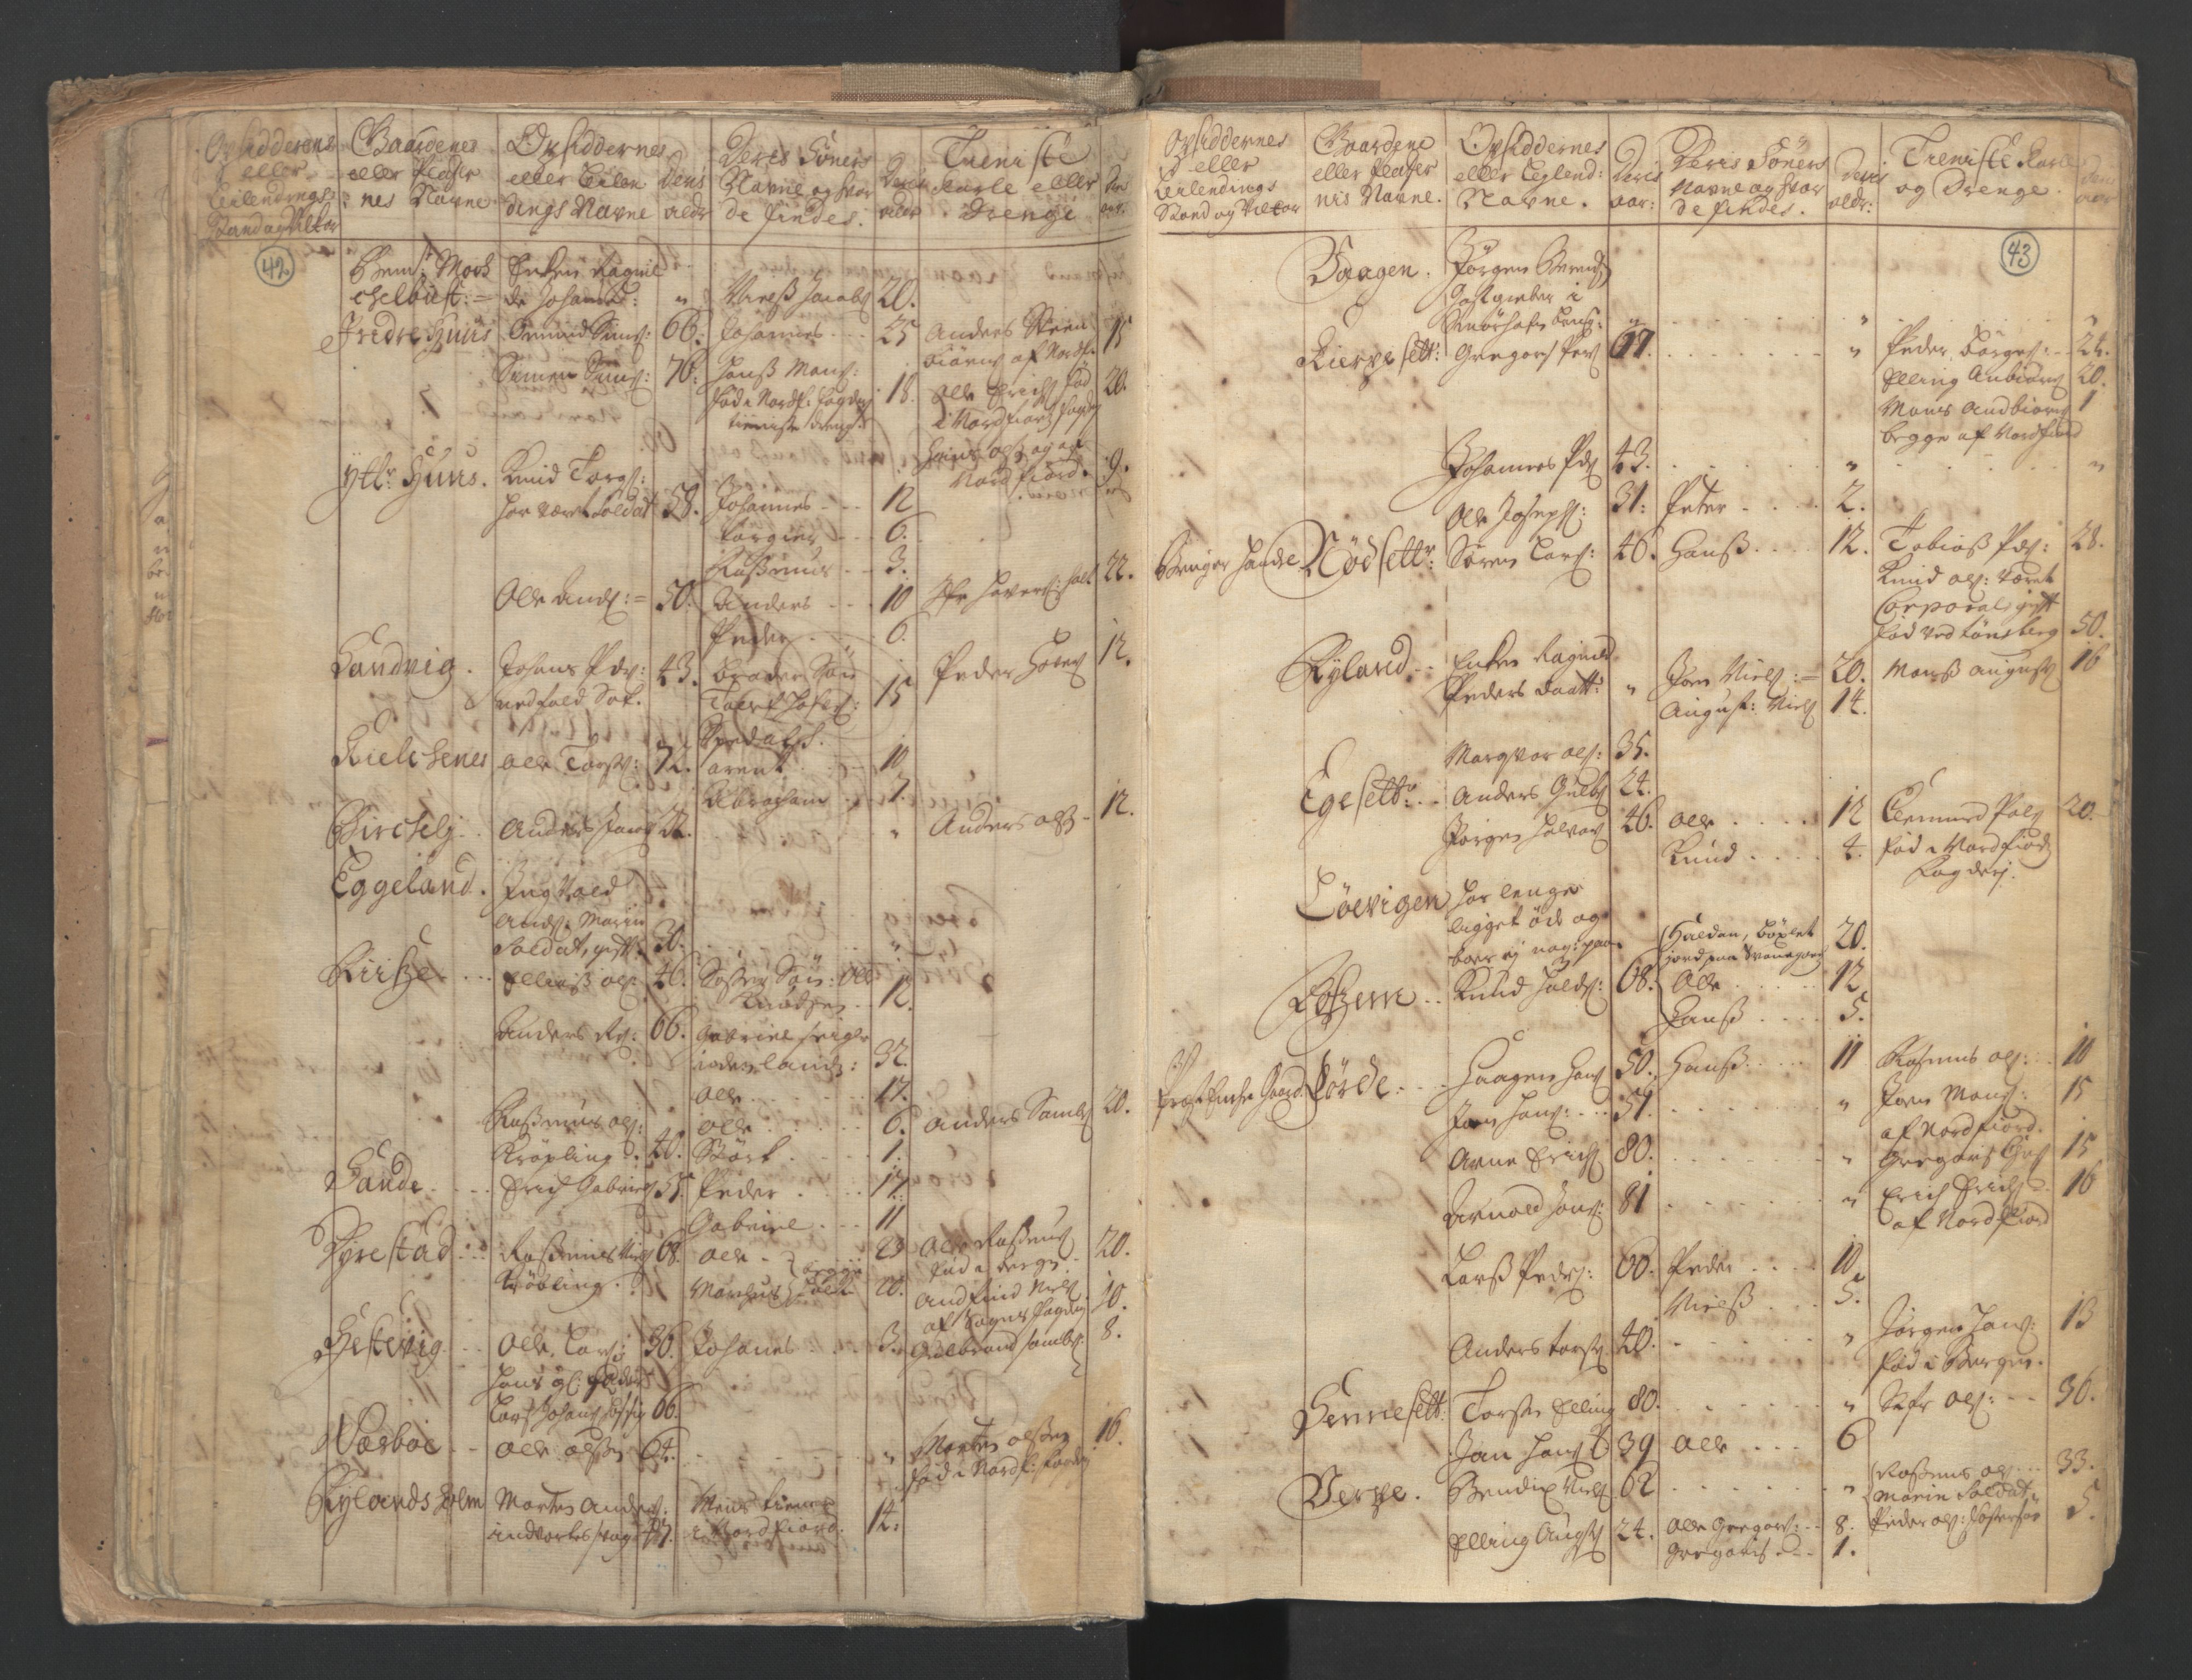 RA, Manntallet 1701, nr. 9: Sunnfjord fogderi, Nordfjord fogderi og Svanø birk, 1701, s. 42-43